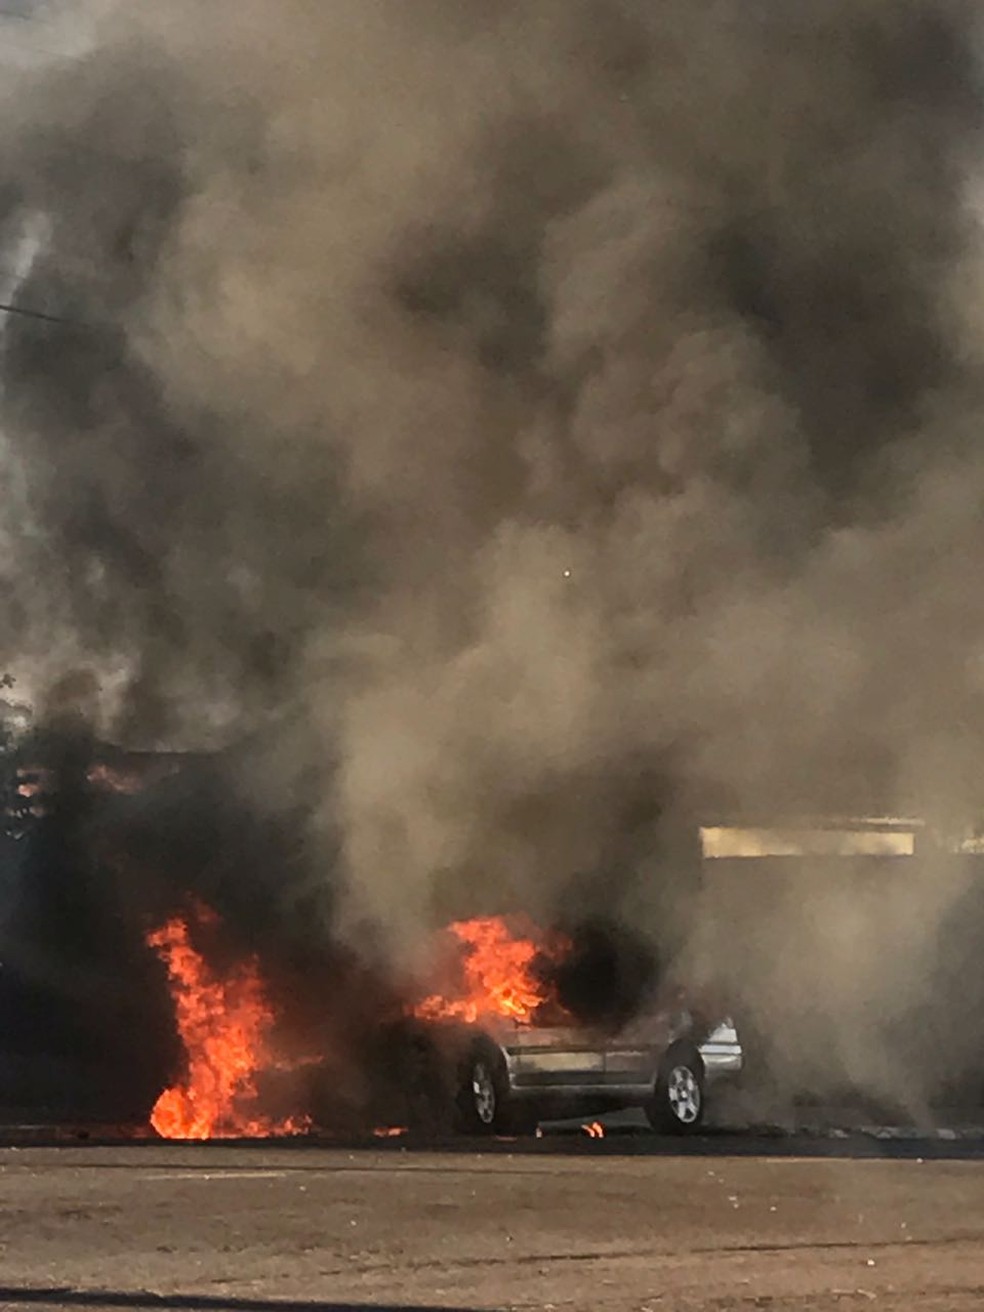 Fogo destruiu VW Santana nesta segunda-feira (7) (Foto: Base de Socorristas/Junqueirópolis)